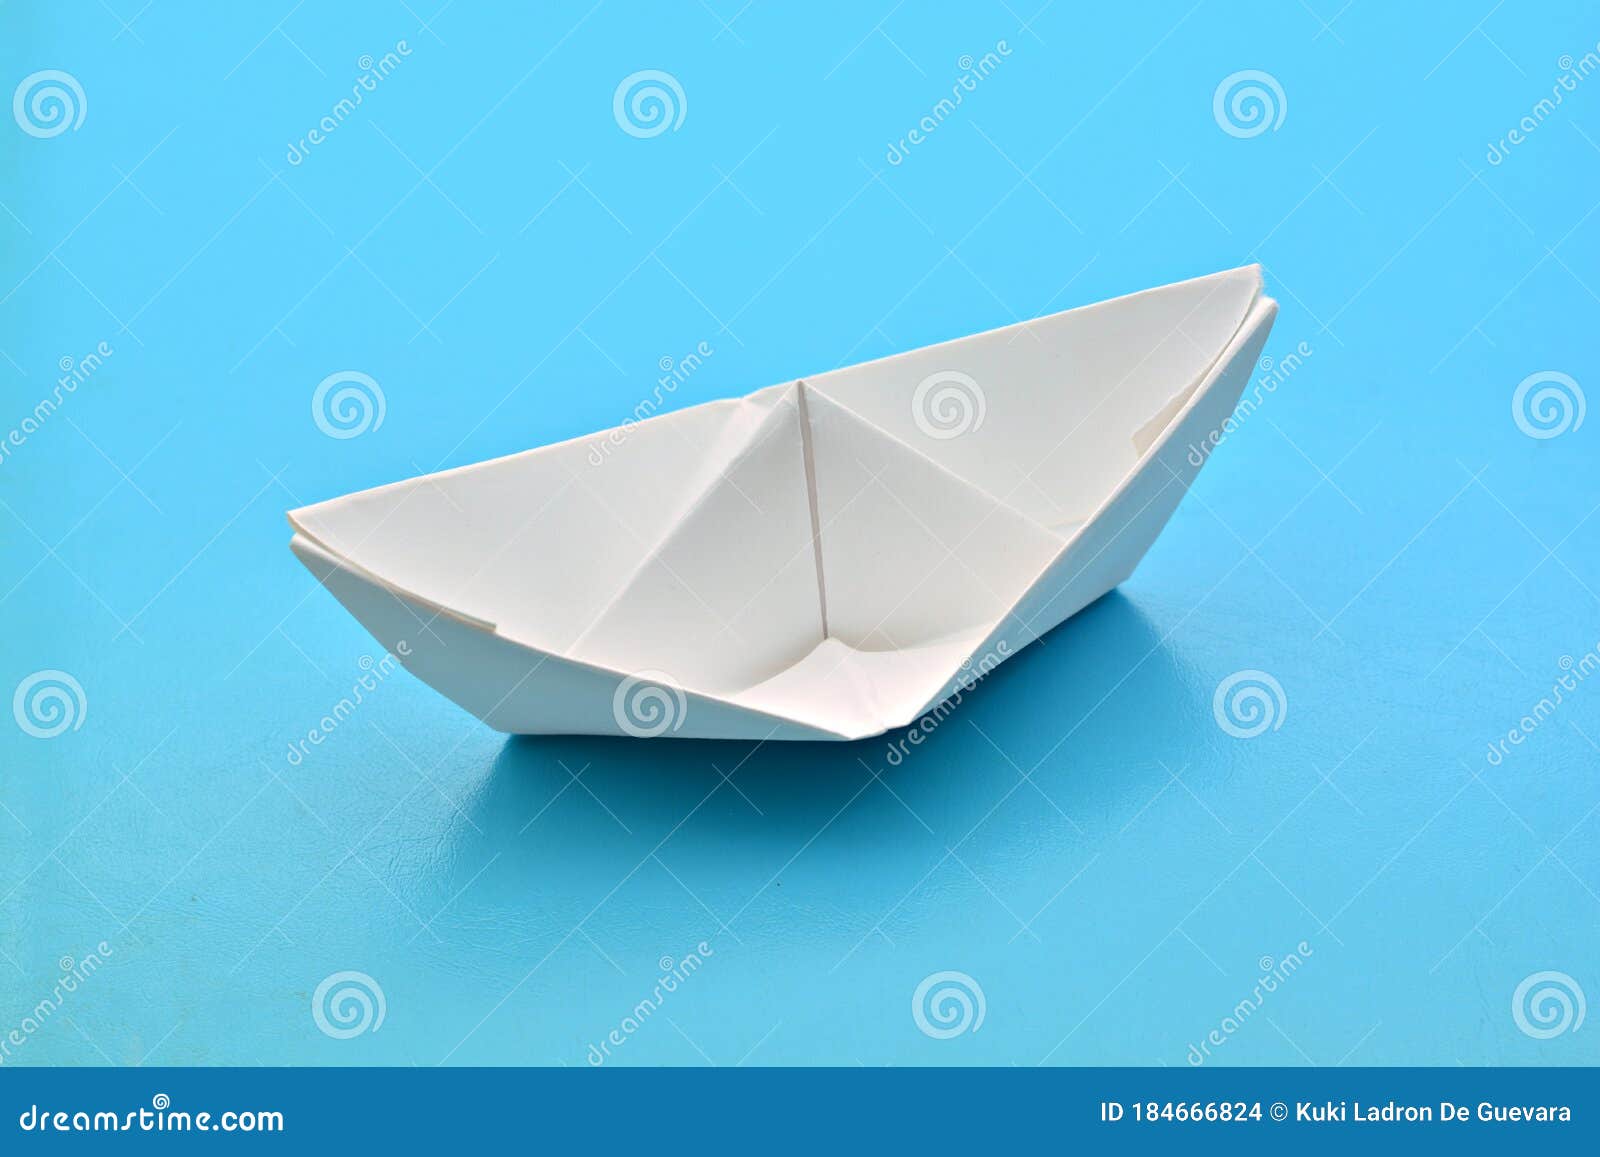 barco de papel sobre fondo azul